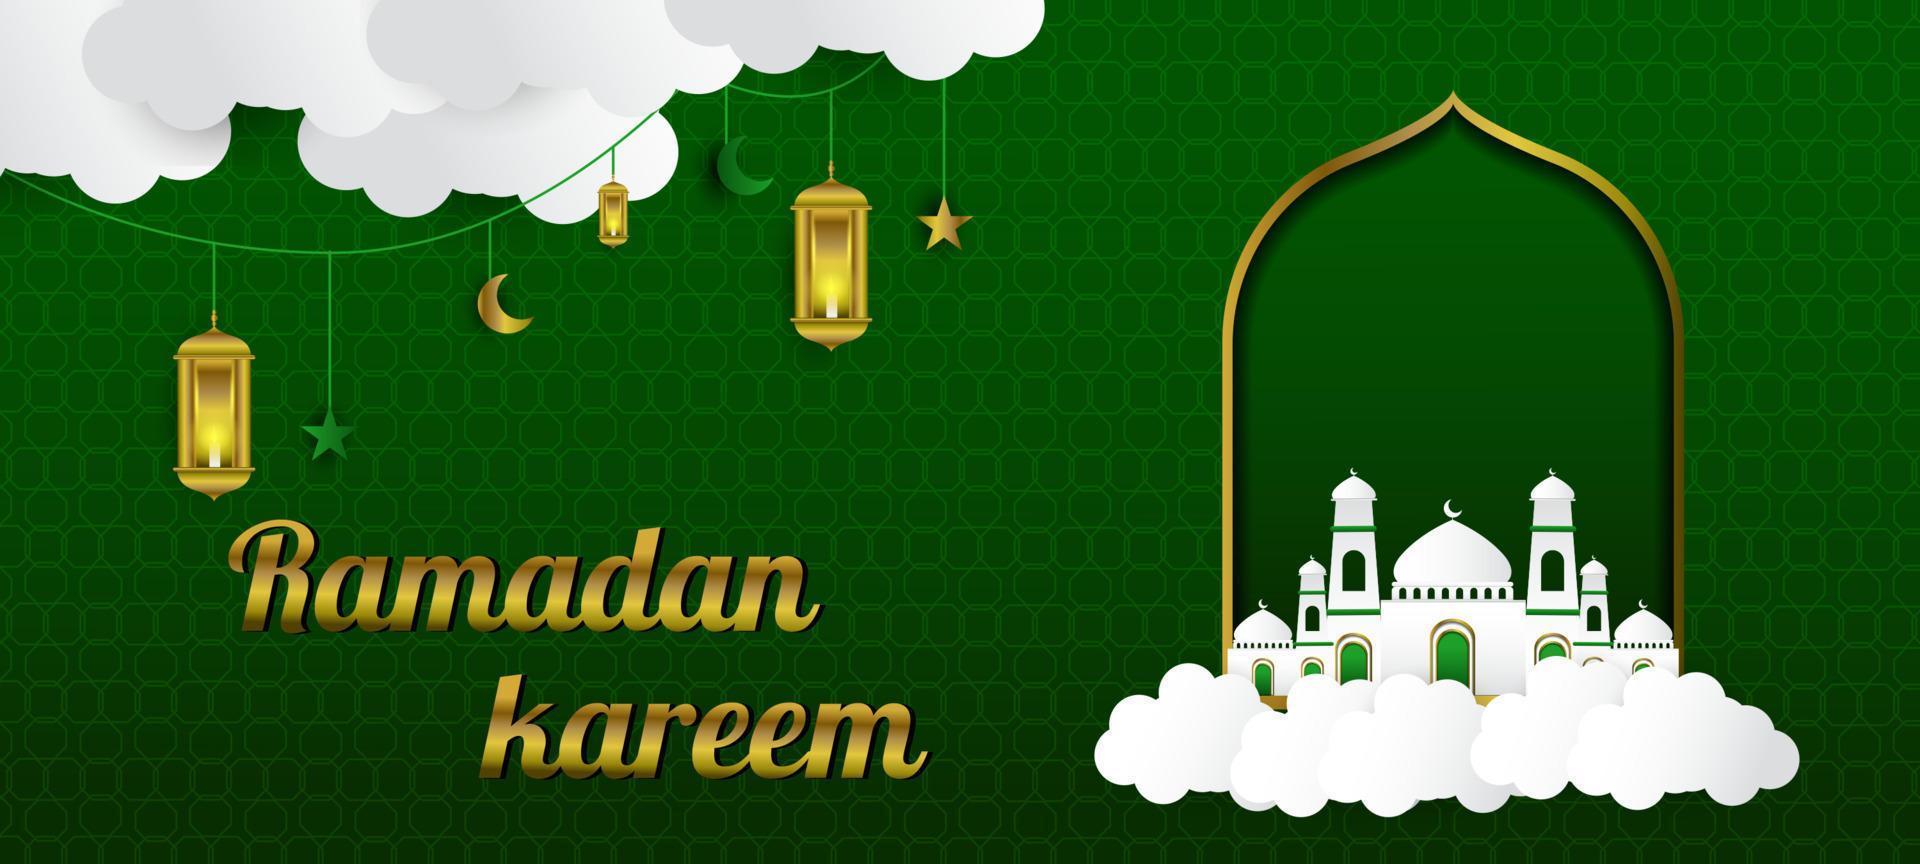 Ramadan banier ontwerp, Islamitisch achtergrond ontwerp met moskee, lantaarn en wolken vector